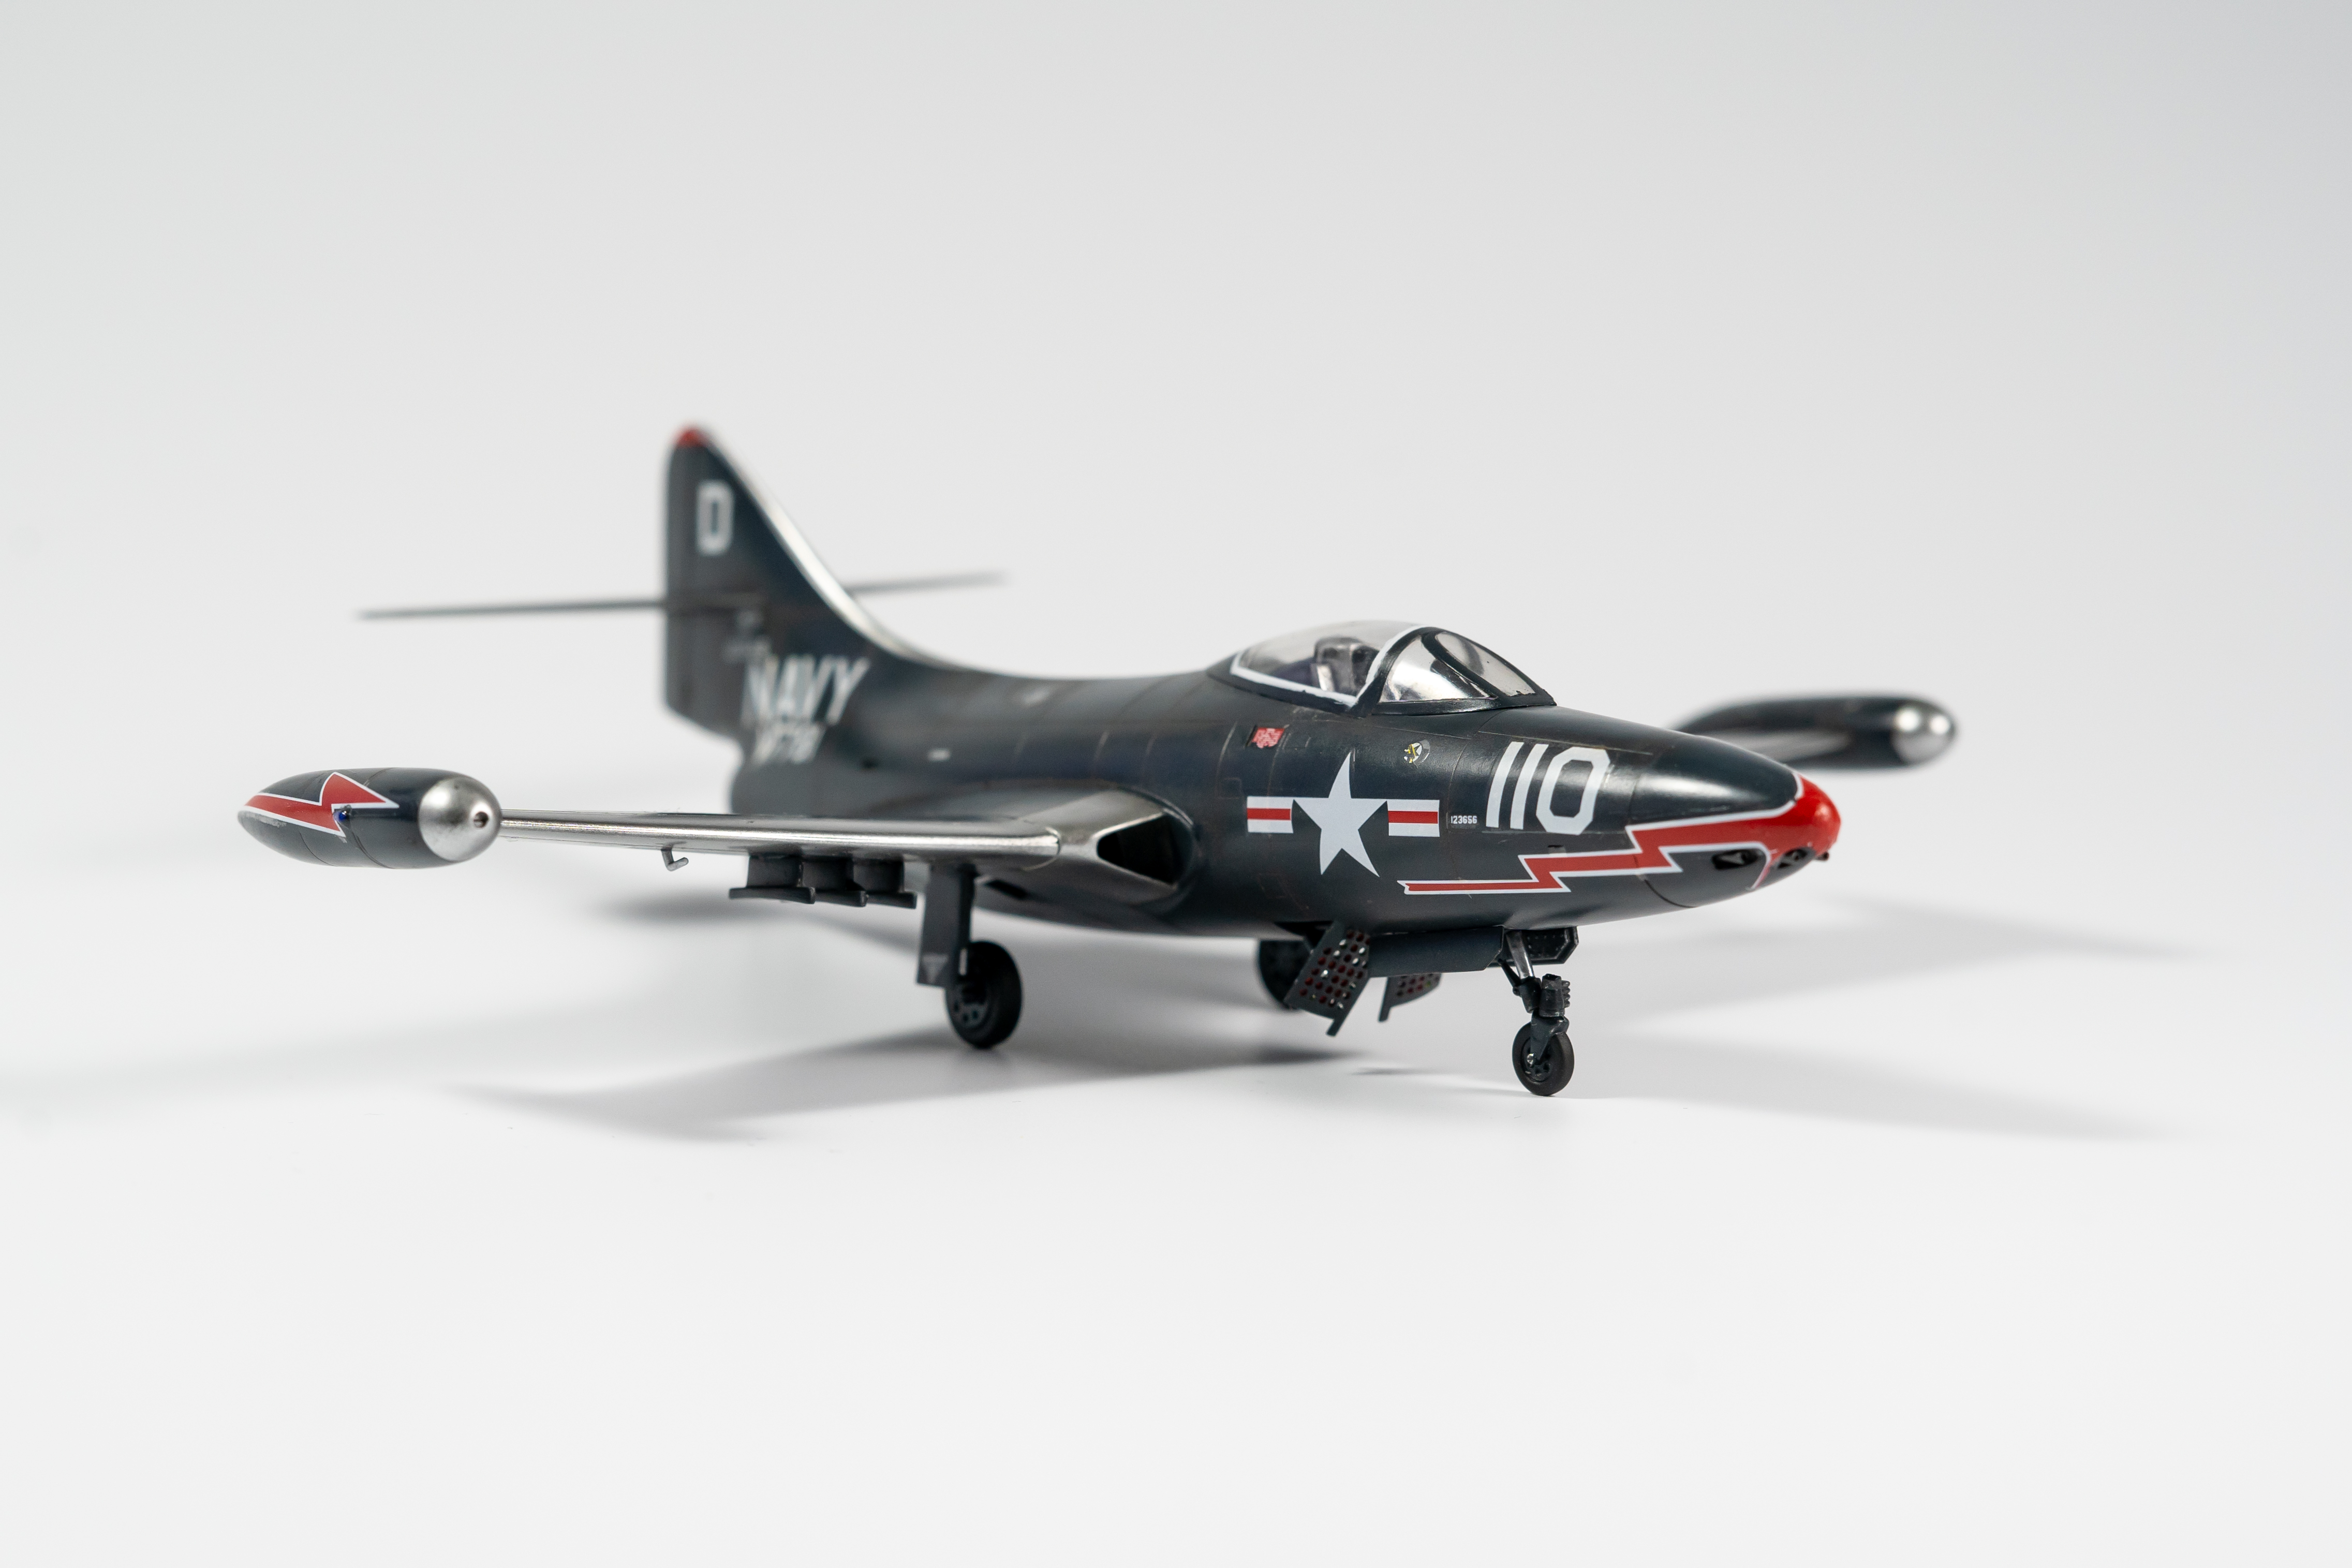 Hasegawa 1:72 F9F-2 Panther – Just for fun